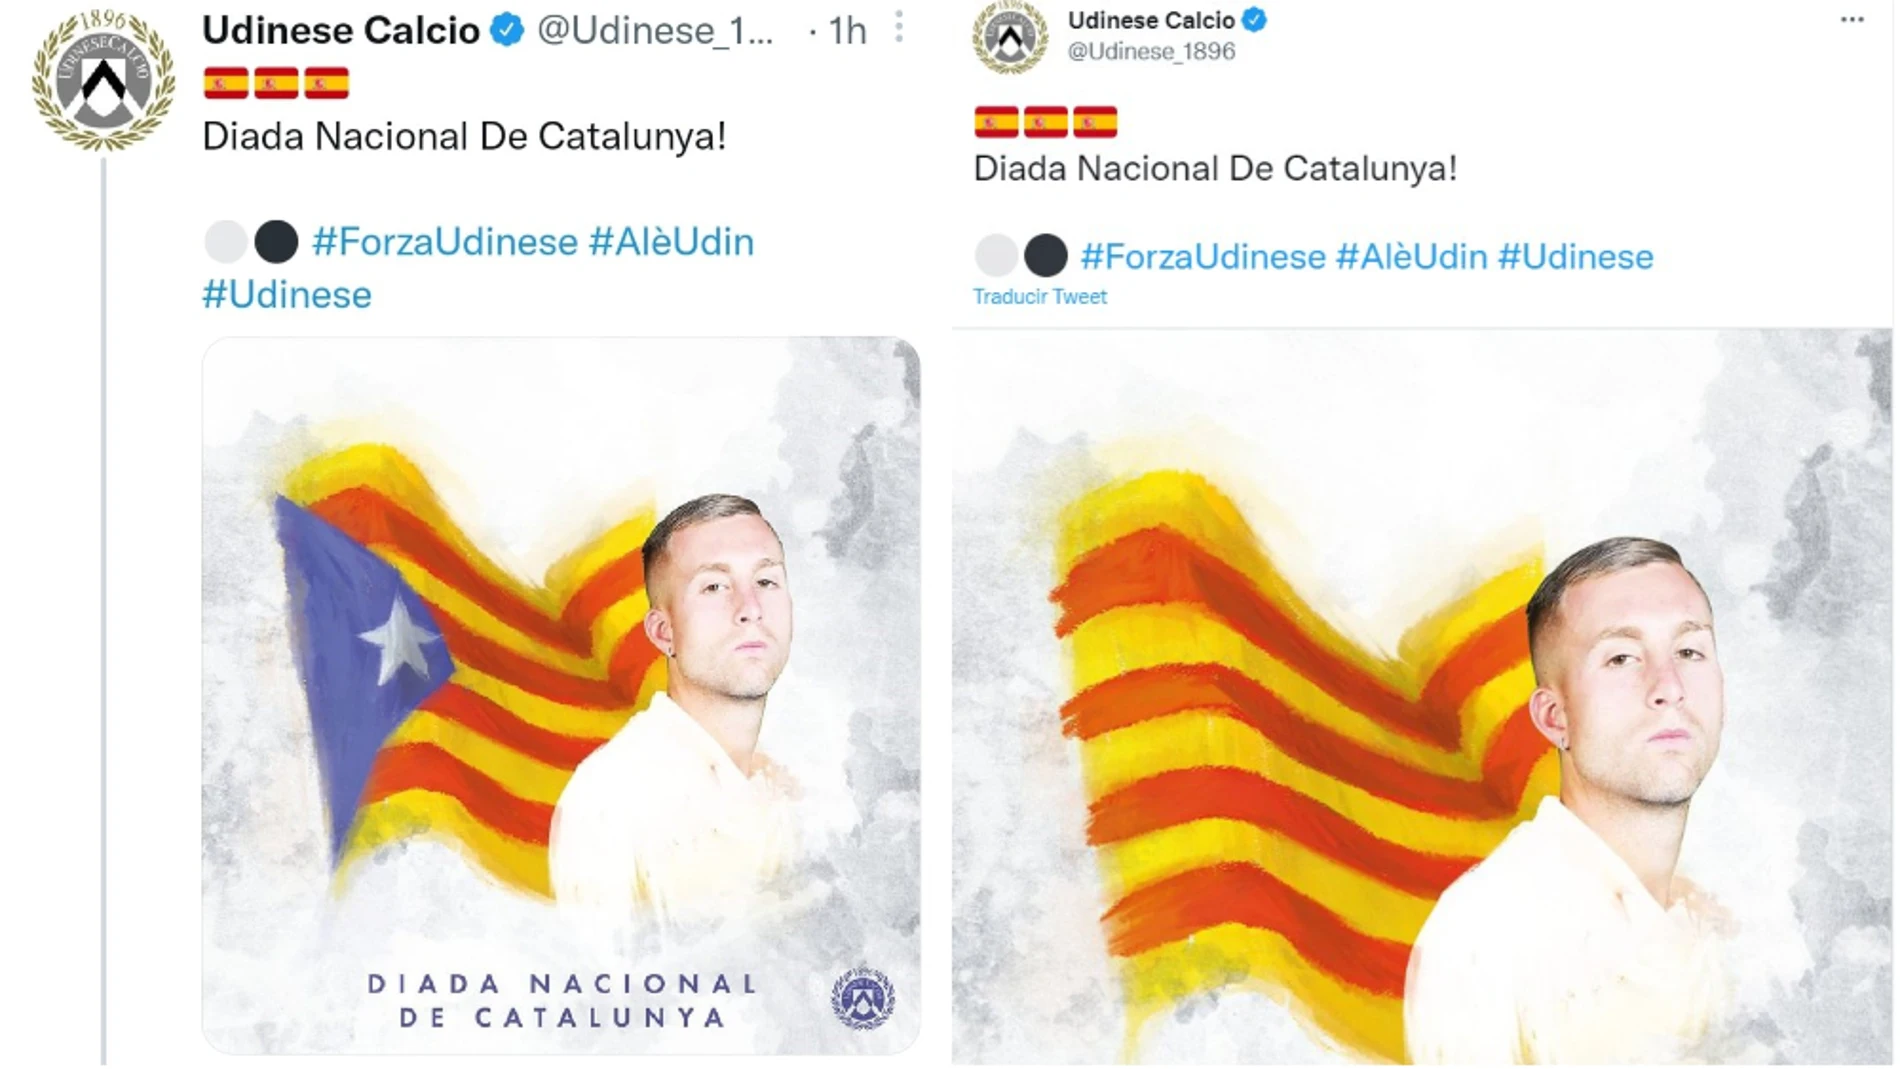 Los tweets ya borrados que publicó el Udinese para celebrar la Diada